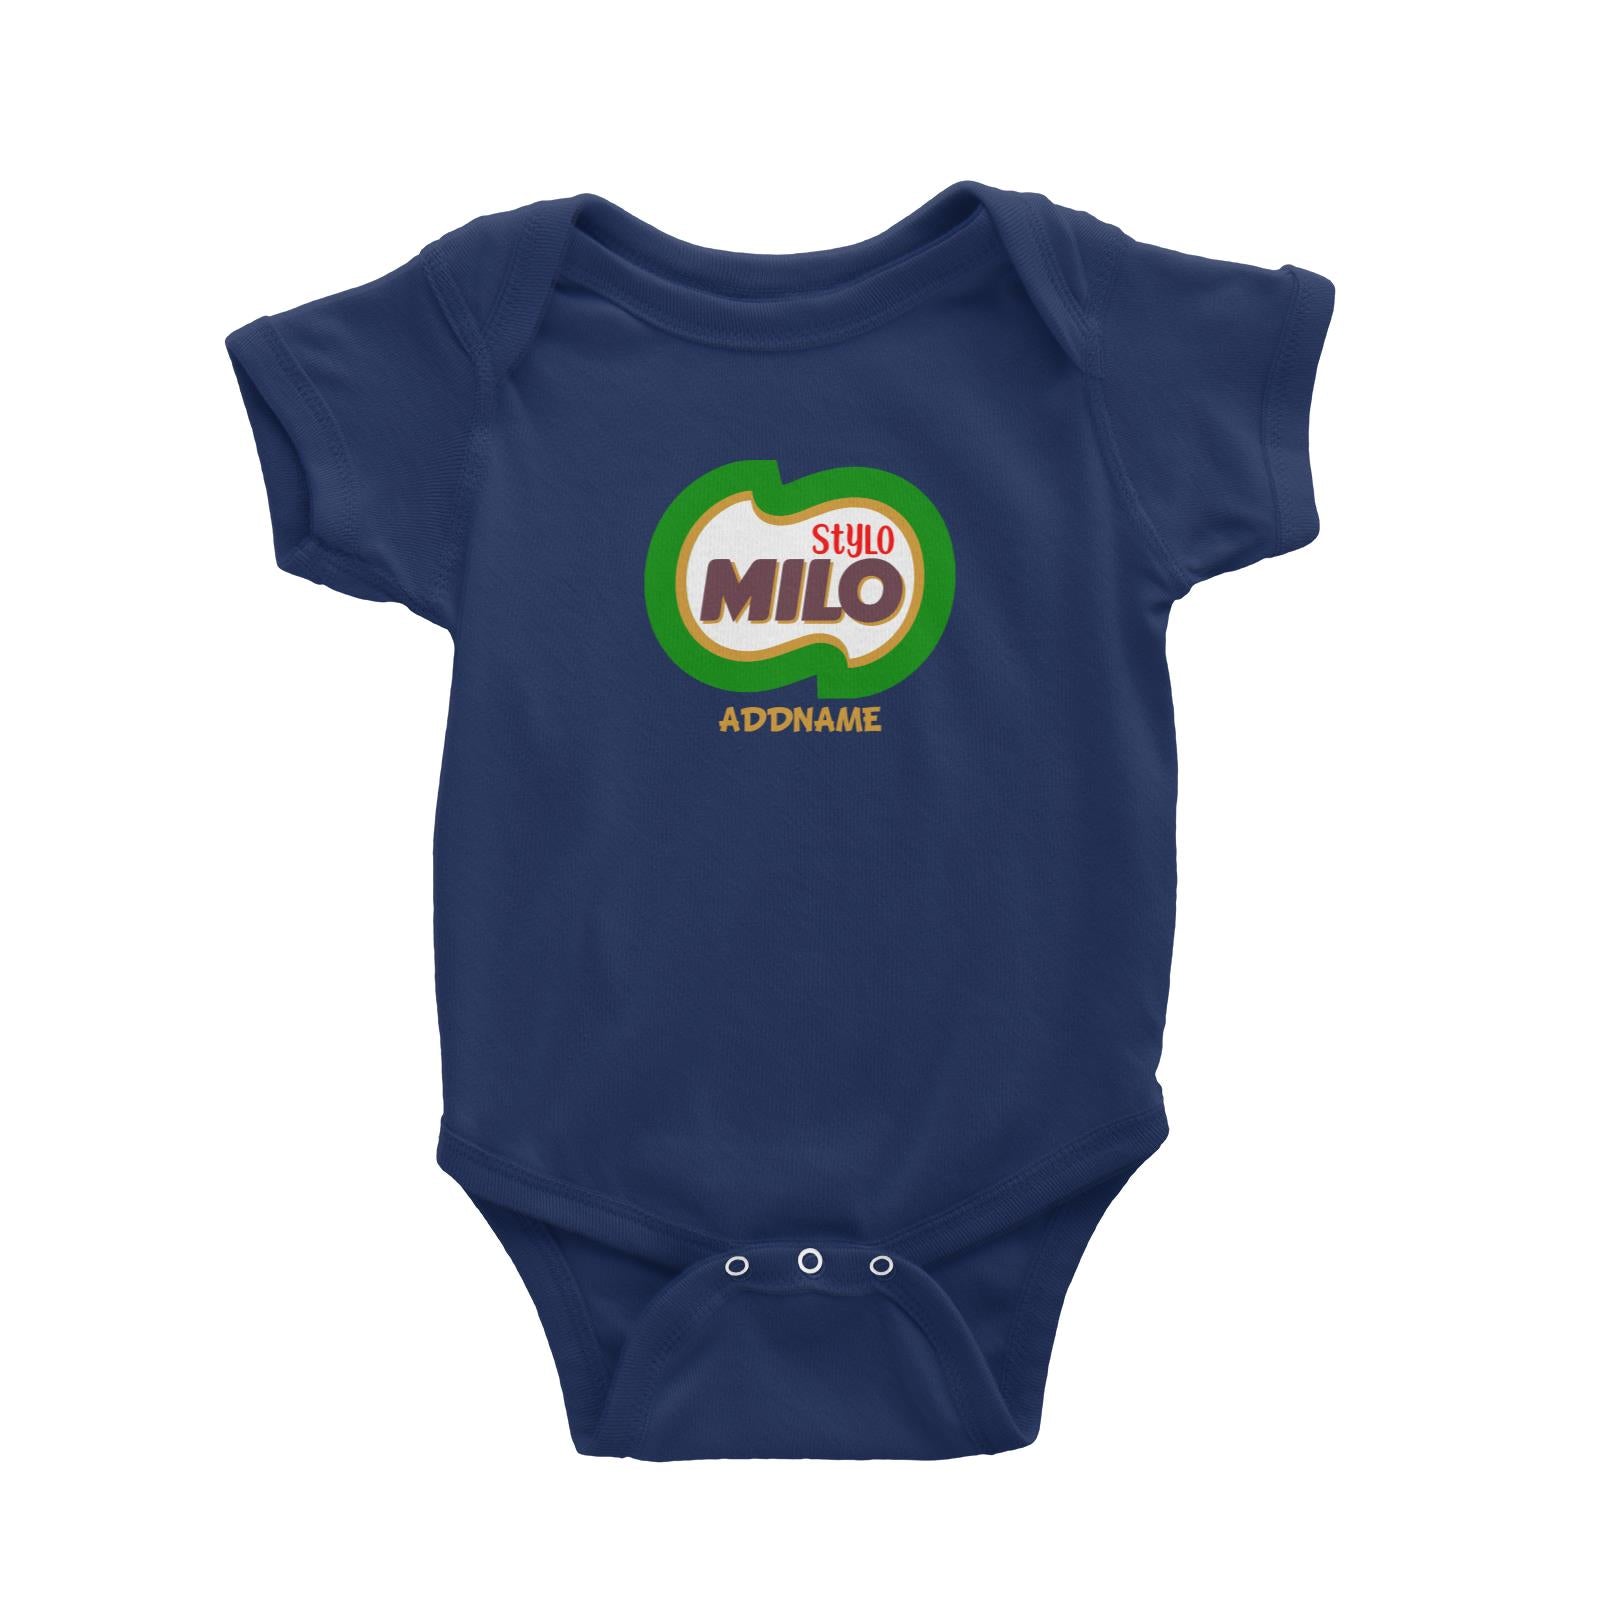 Stylo Milo Baby Romper